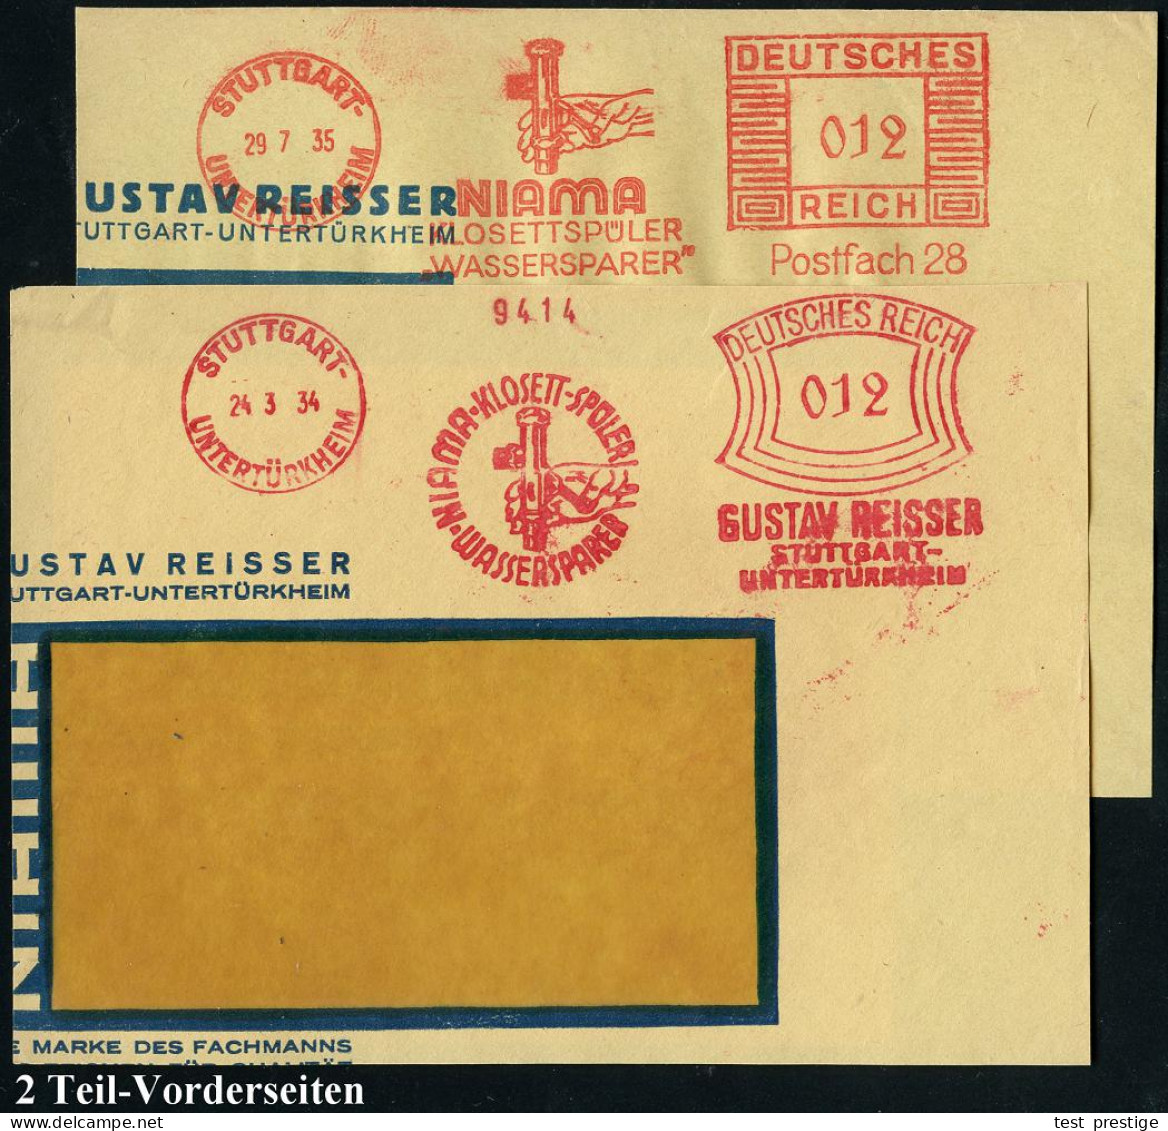 STUTTGART-/ UNTERTÜRKHEIM/ NIAMA-KLOSETT-SPÜLER/ WASSERSPAREN/ GUSTAV REISSER.. 1934/35 2 Ver-schiedene AFS Francotyp "B - Other